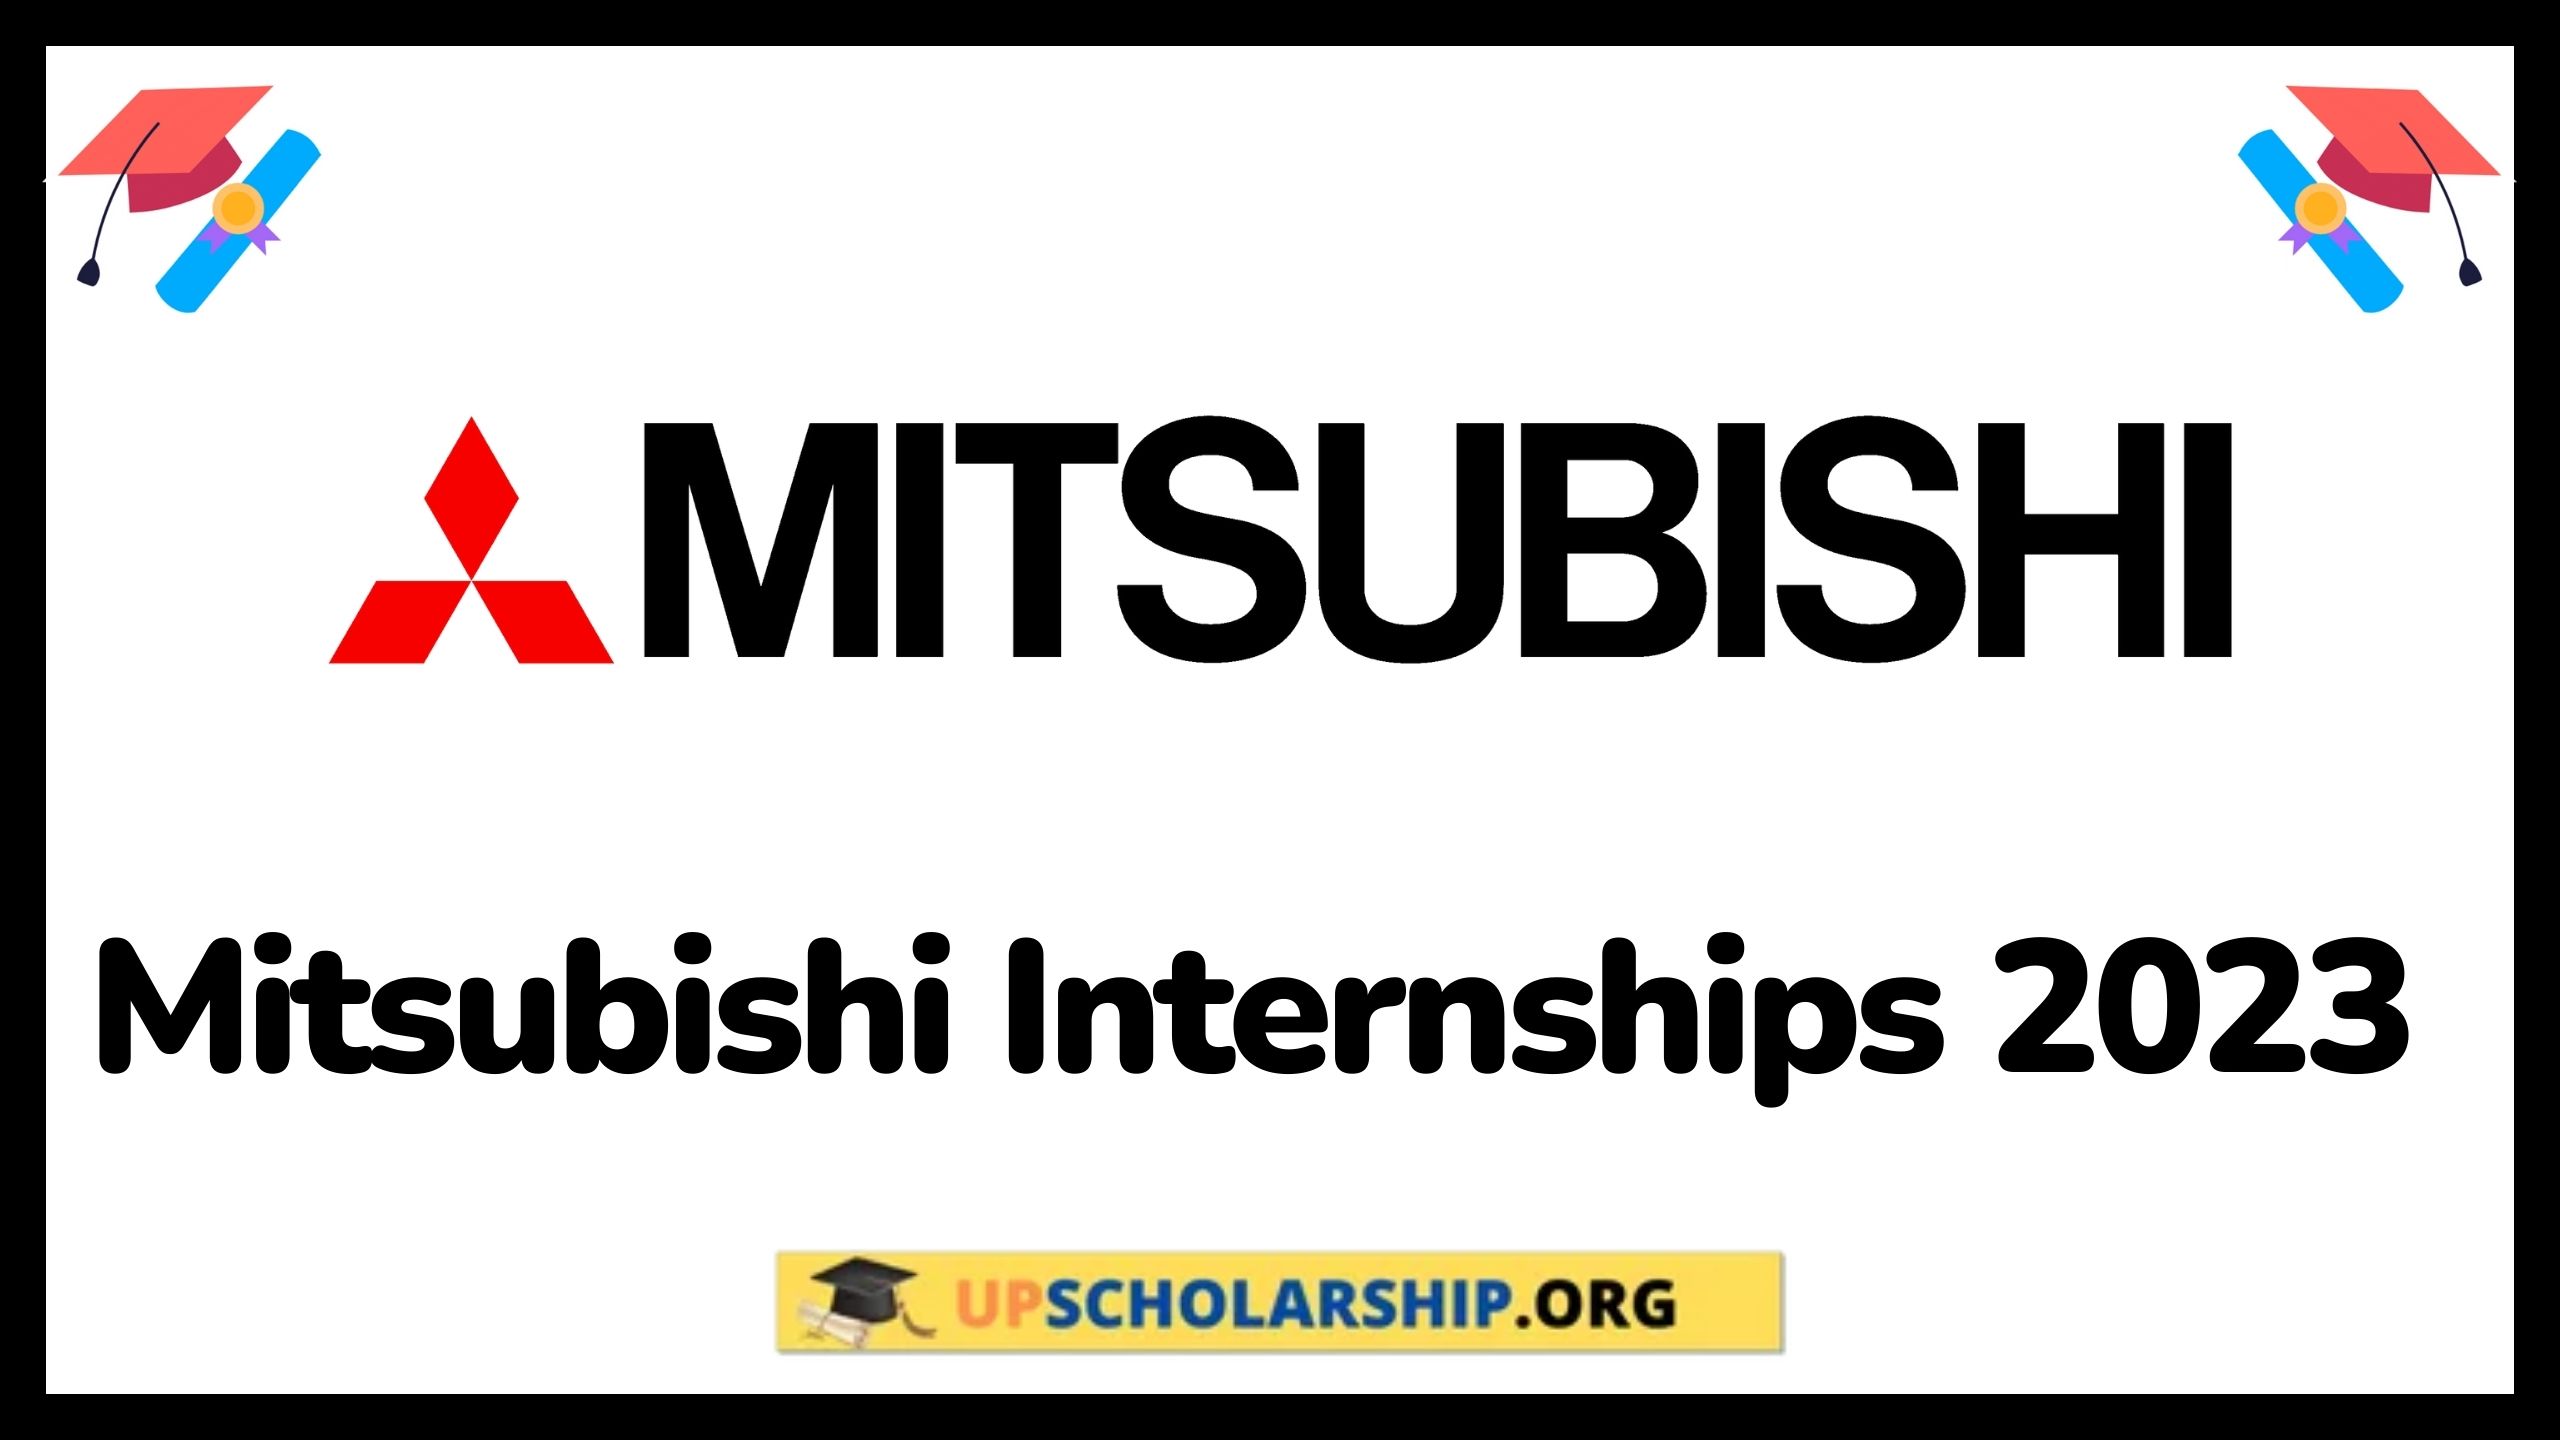 Mitsubishi Internships 2023